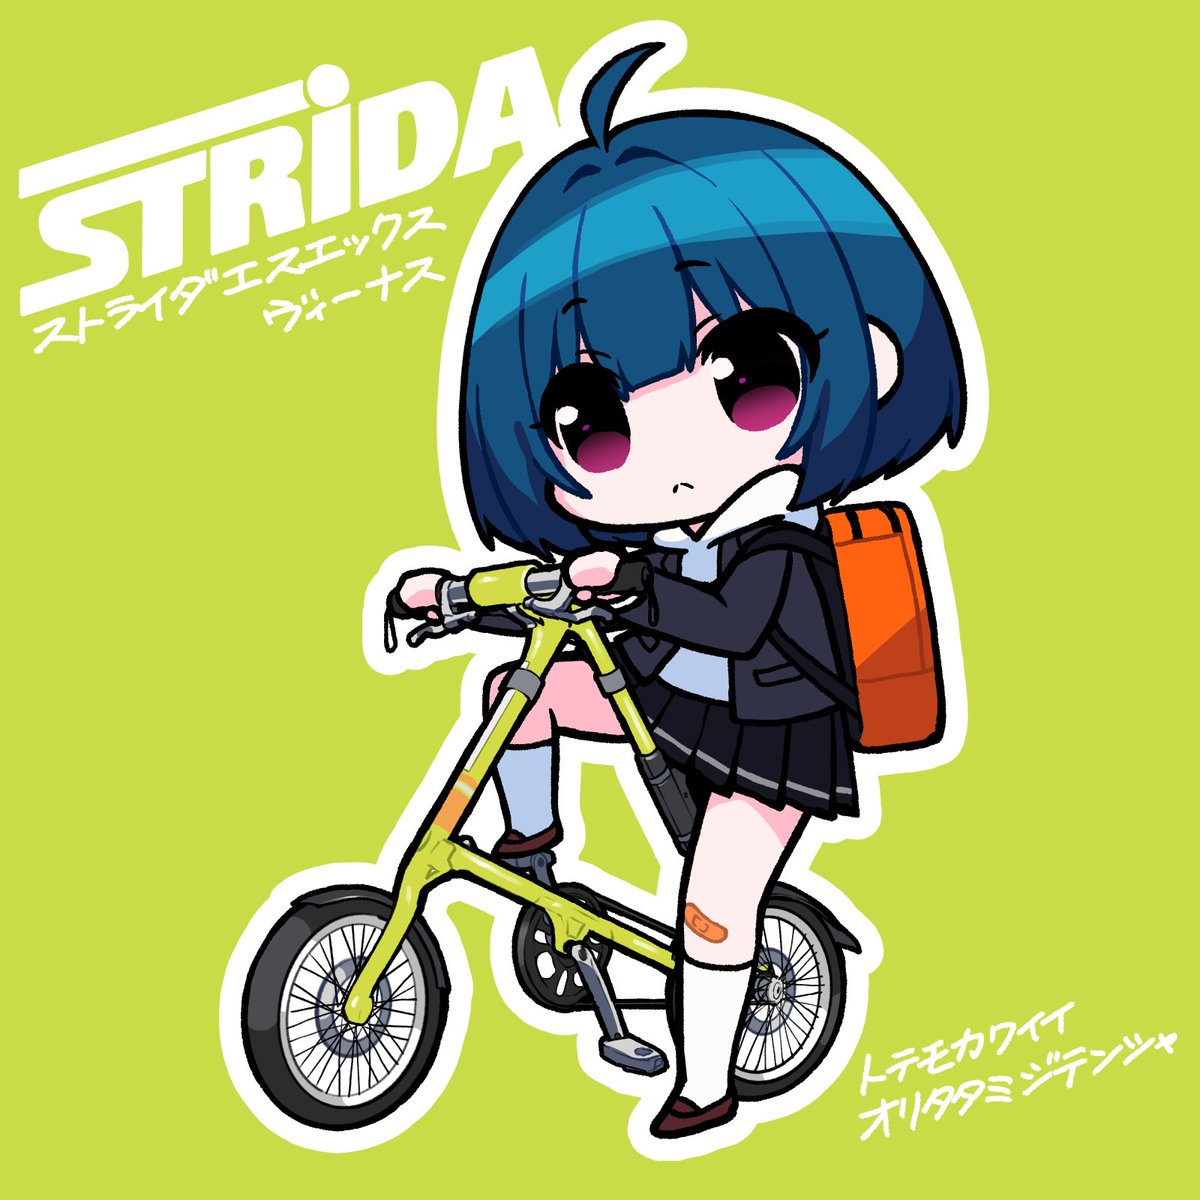 「三角形のかわいい自転車 #STRiDA 」|にきゅっぱ△コミティア144/D13bのイラスト